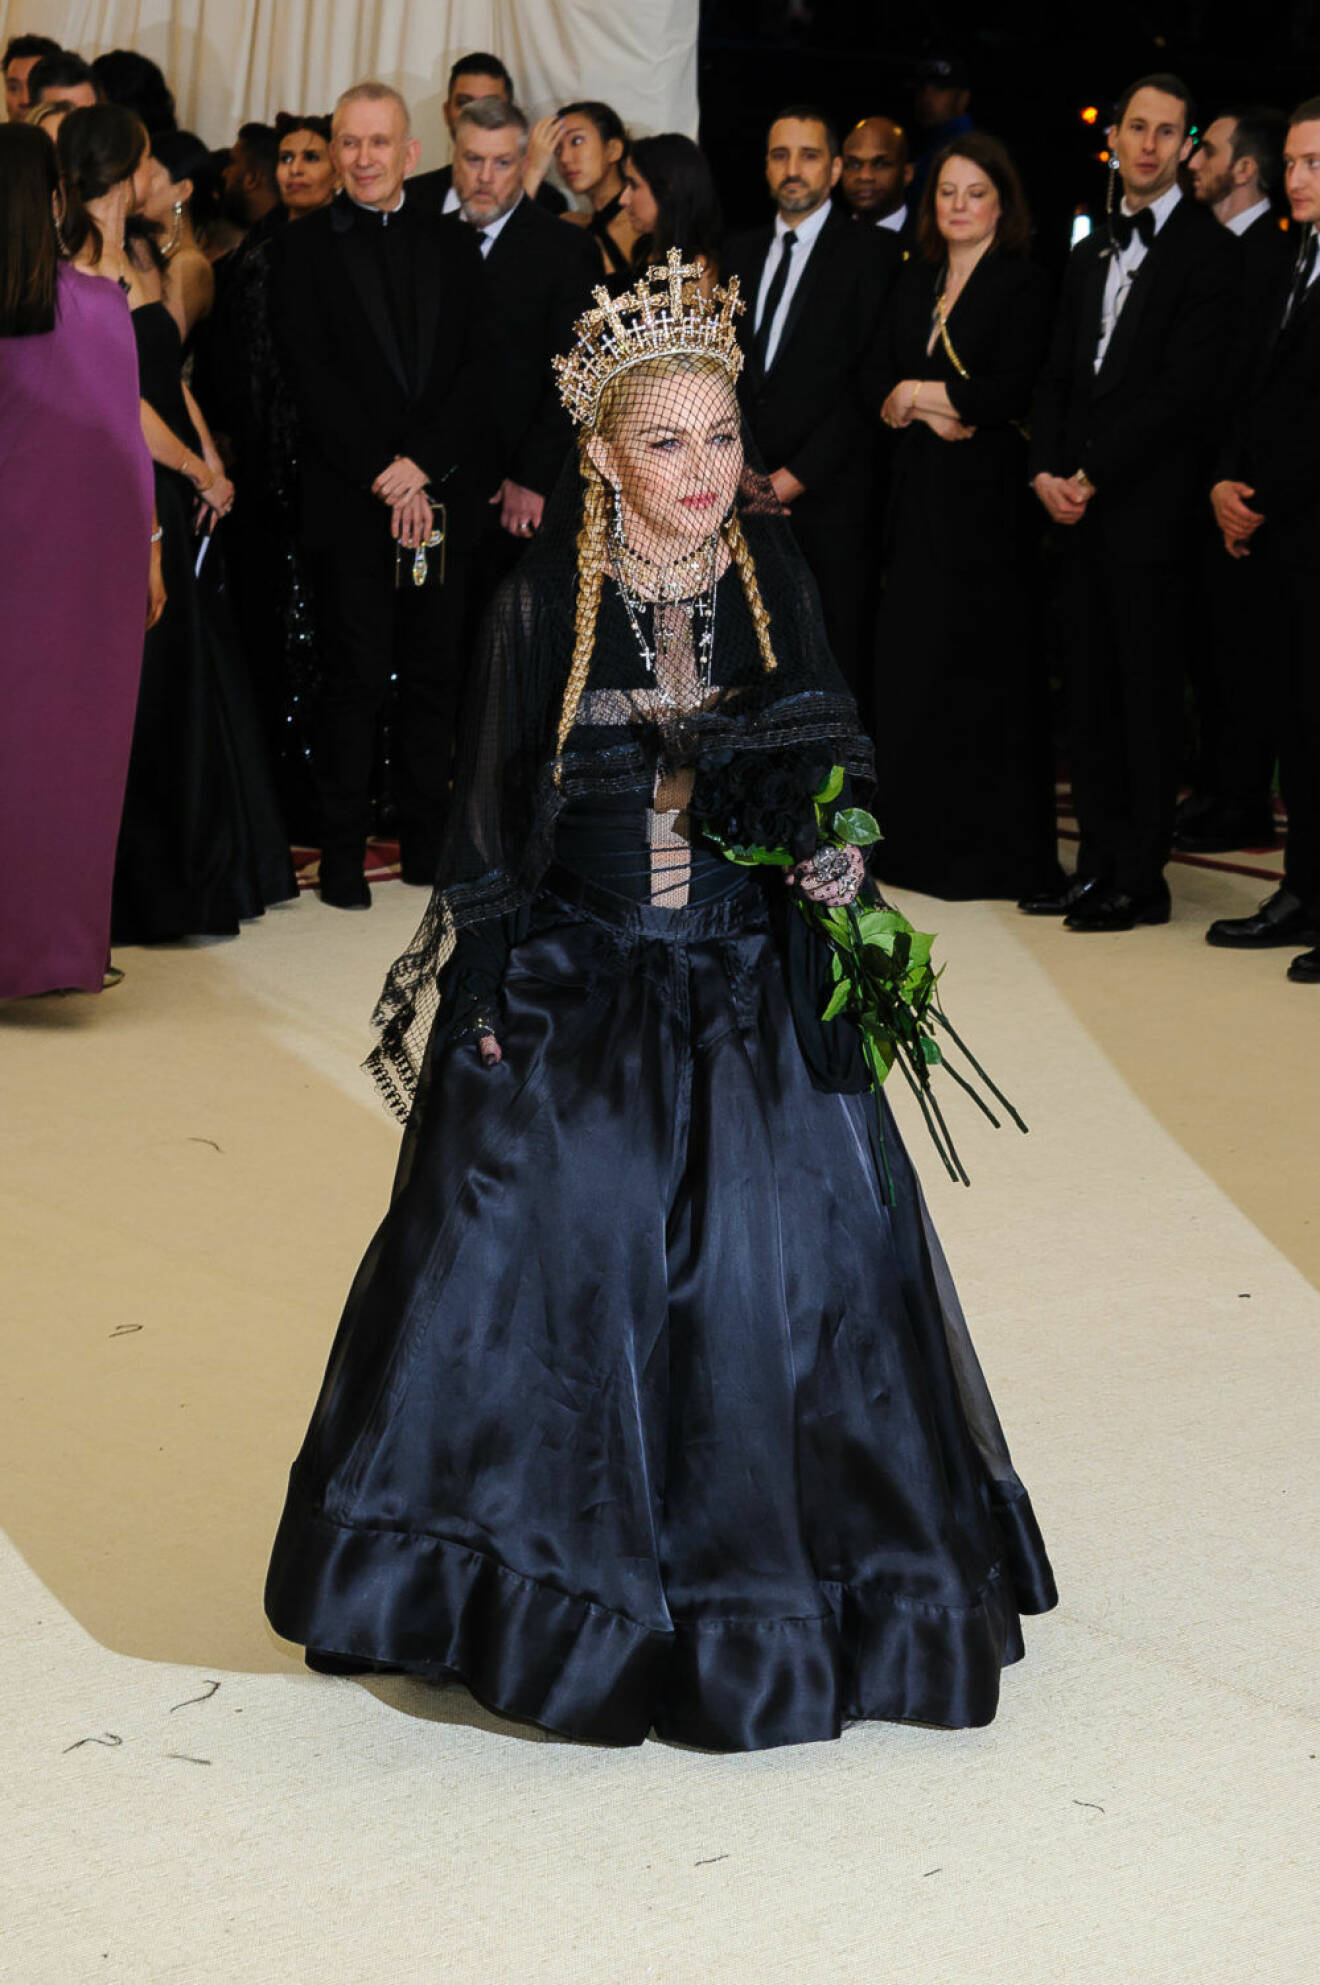 Madonna i svart långklänning och krona.